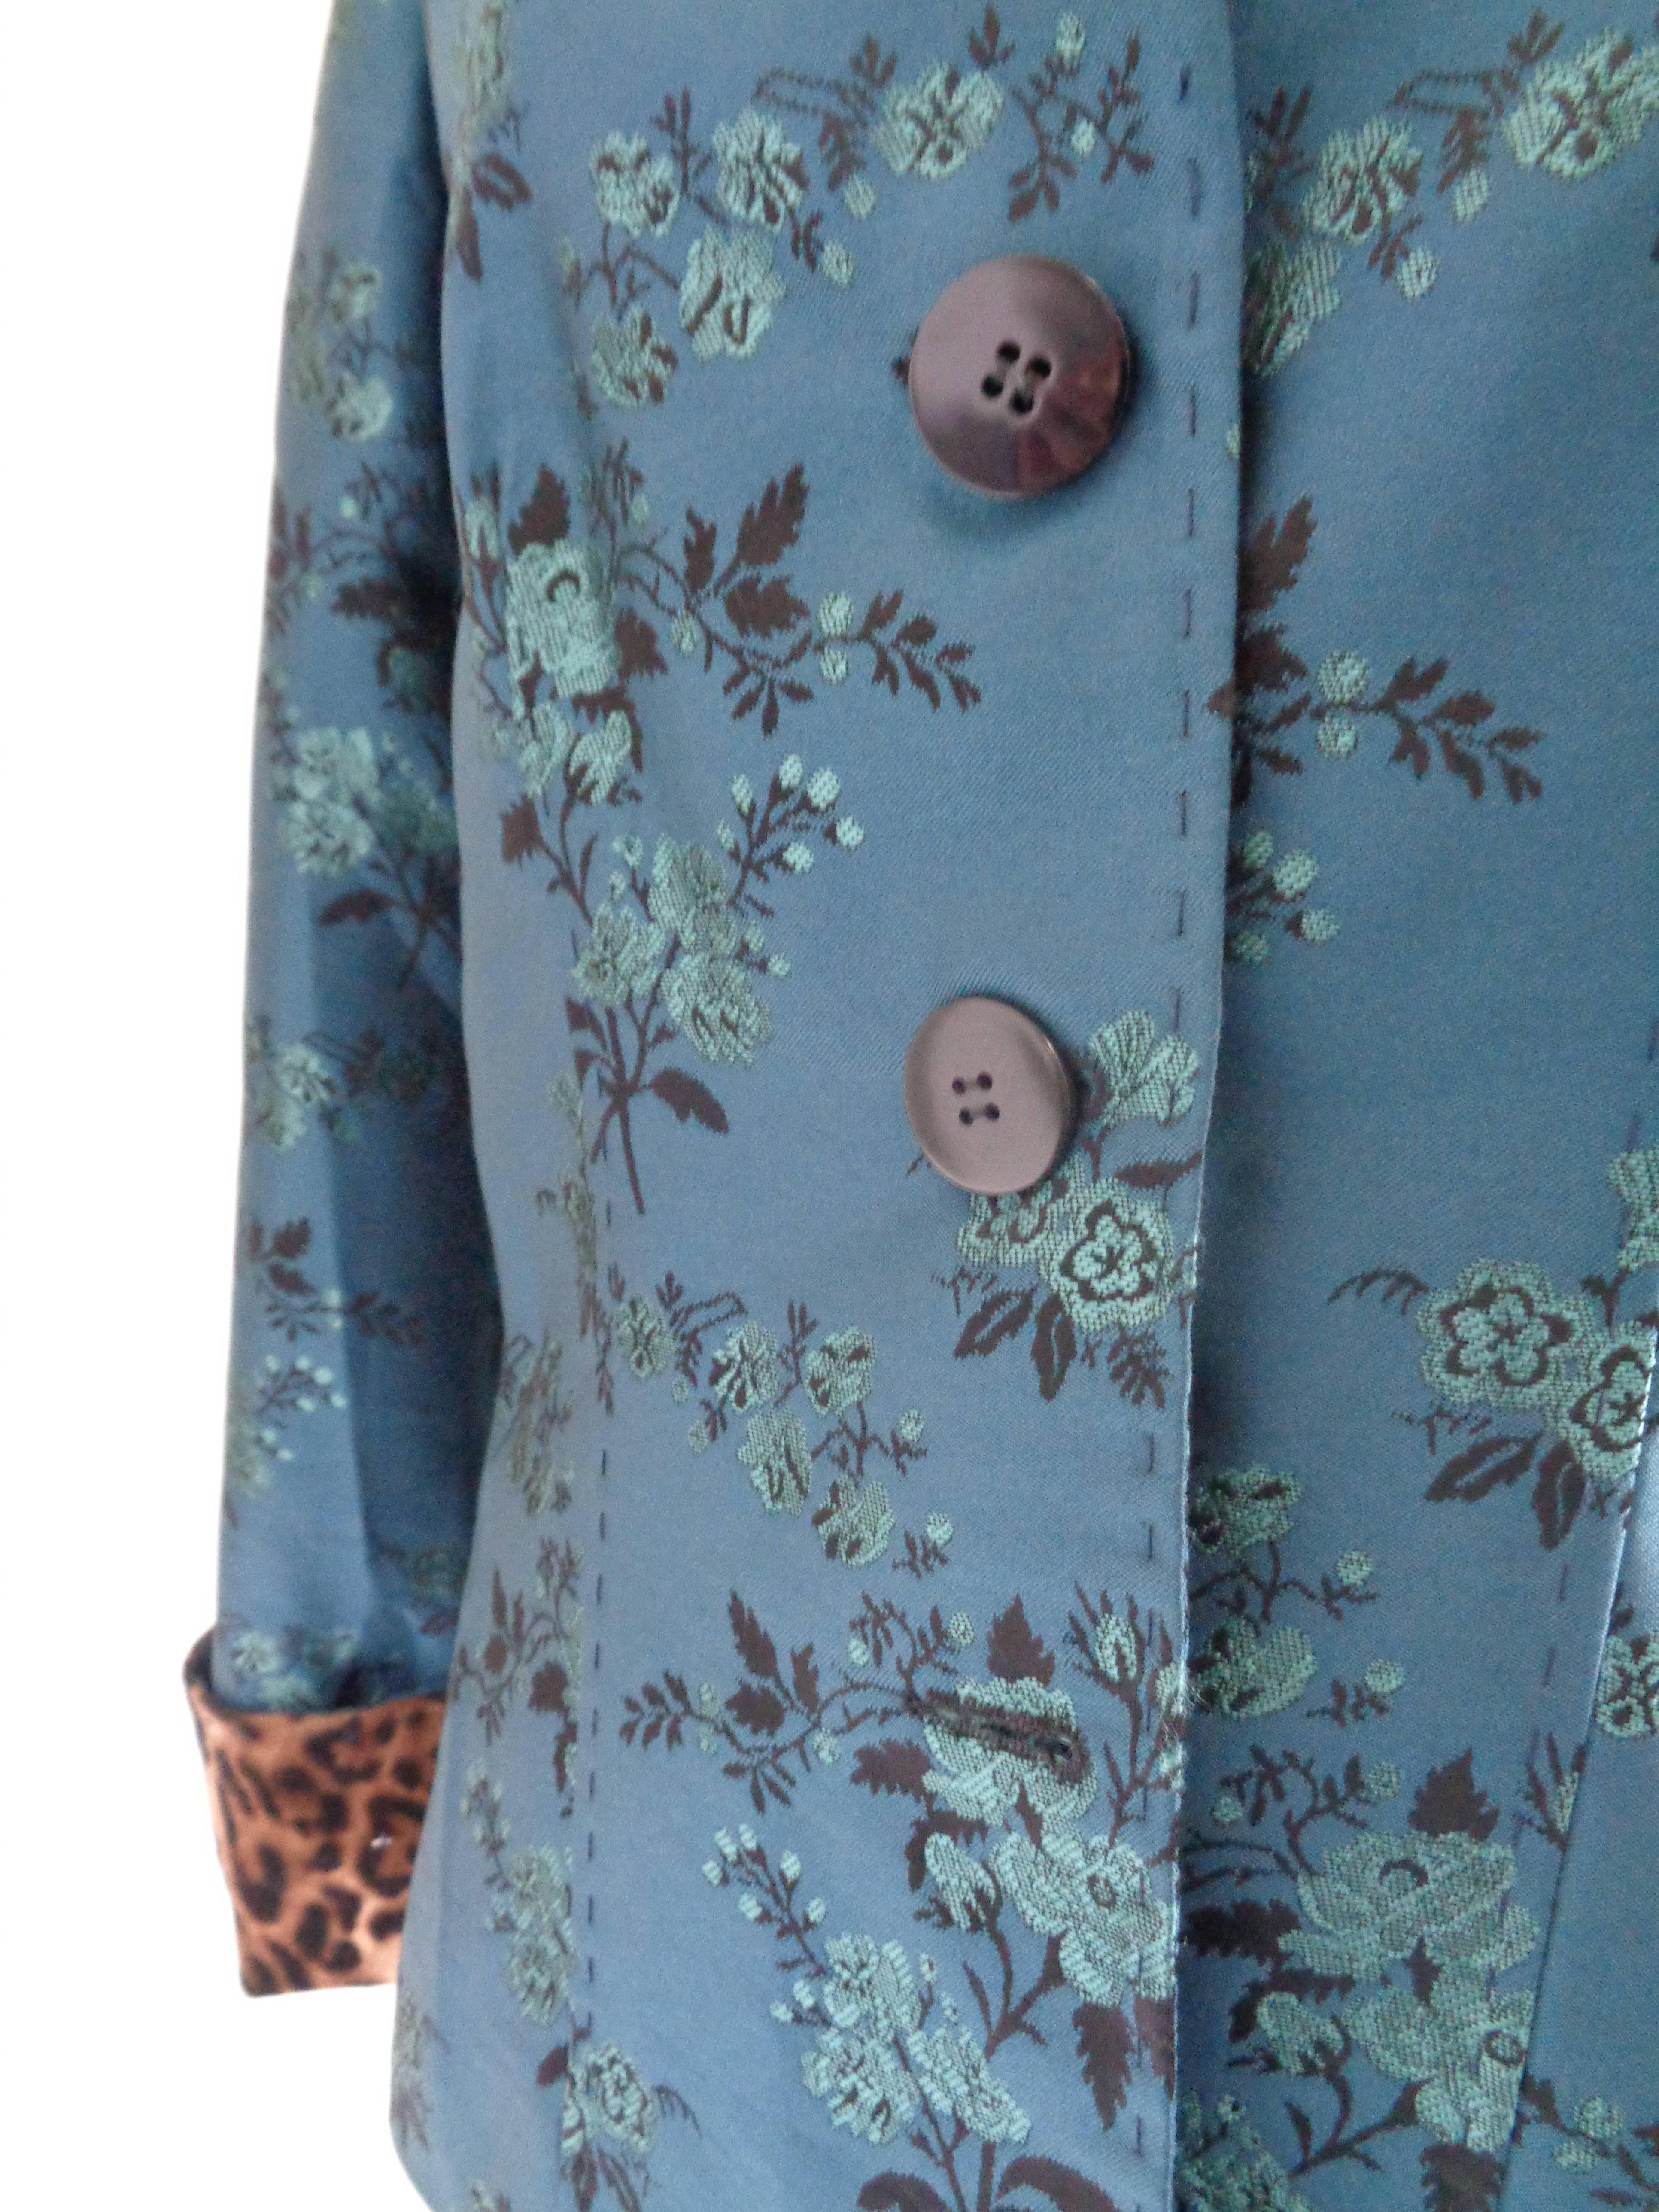 Pamela Flower embellished Blu jacket In Excellent Condition For Sale In Capri, IT